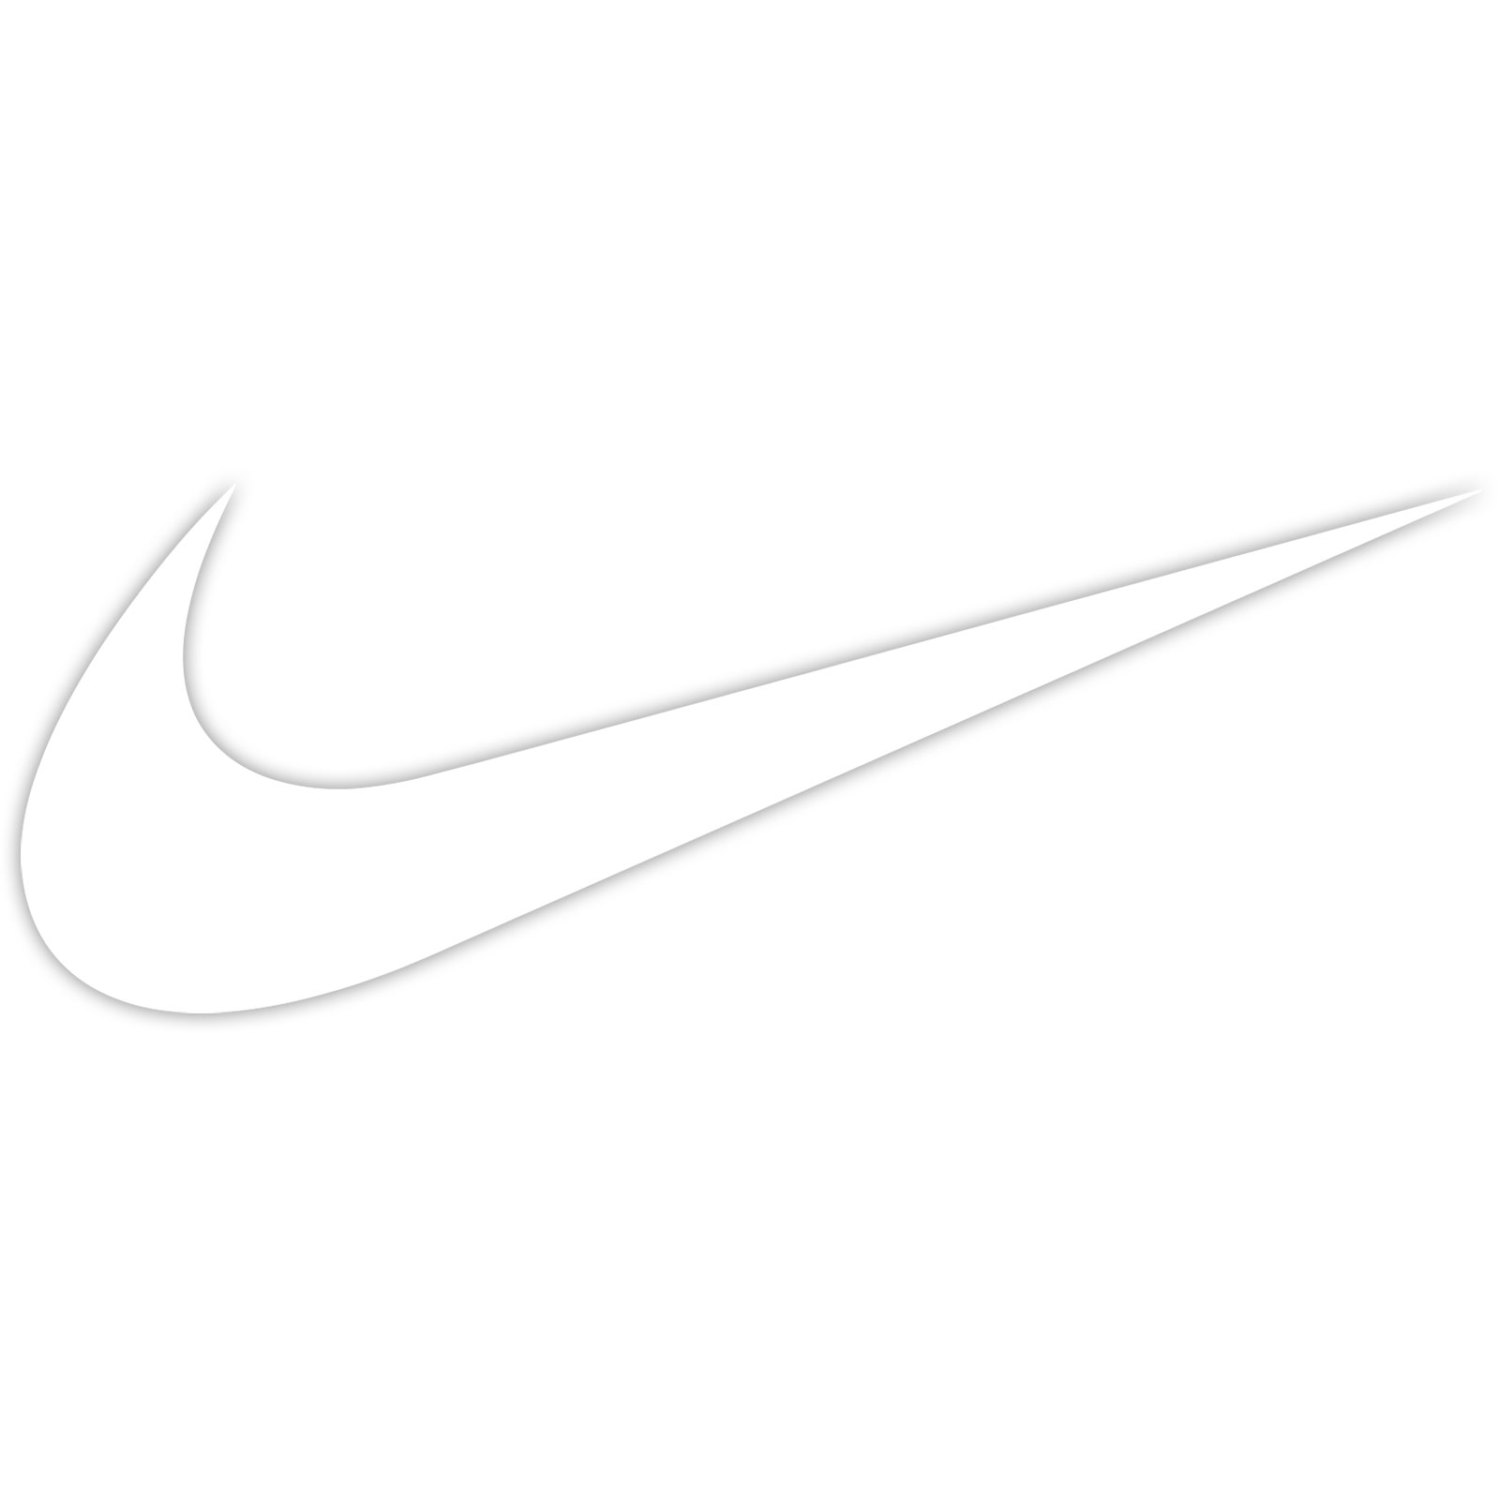 Free Nike Swoosh Png, Download Free Nike Swoosh Png png images, Free